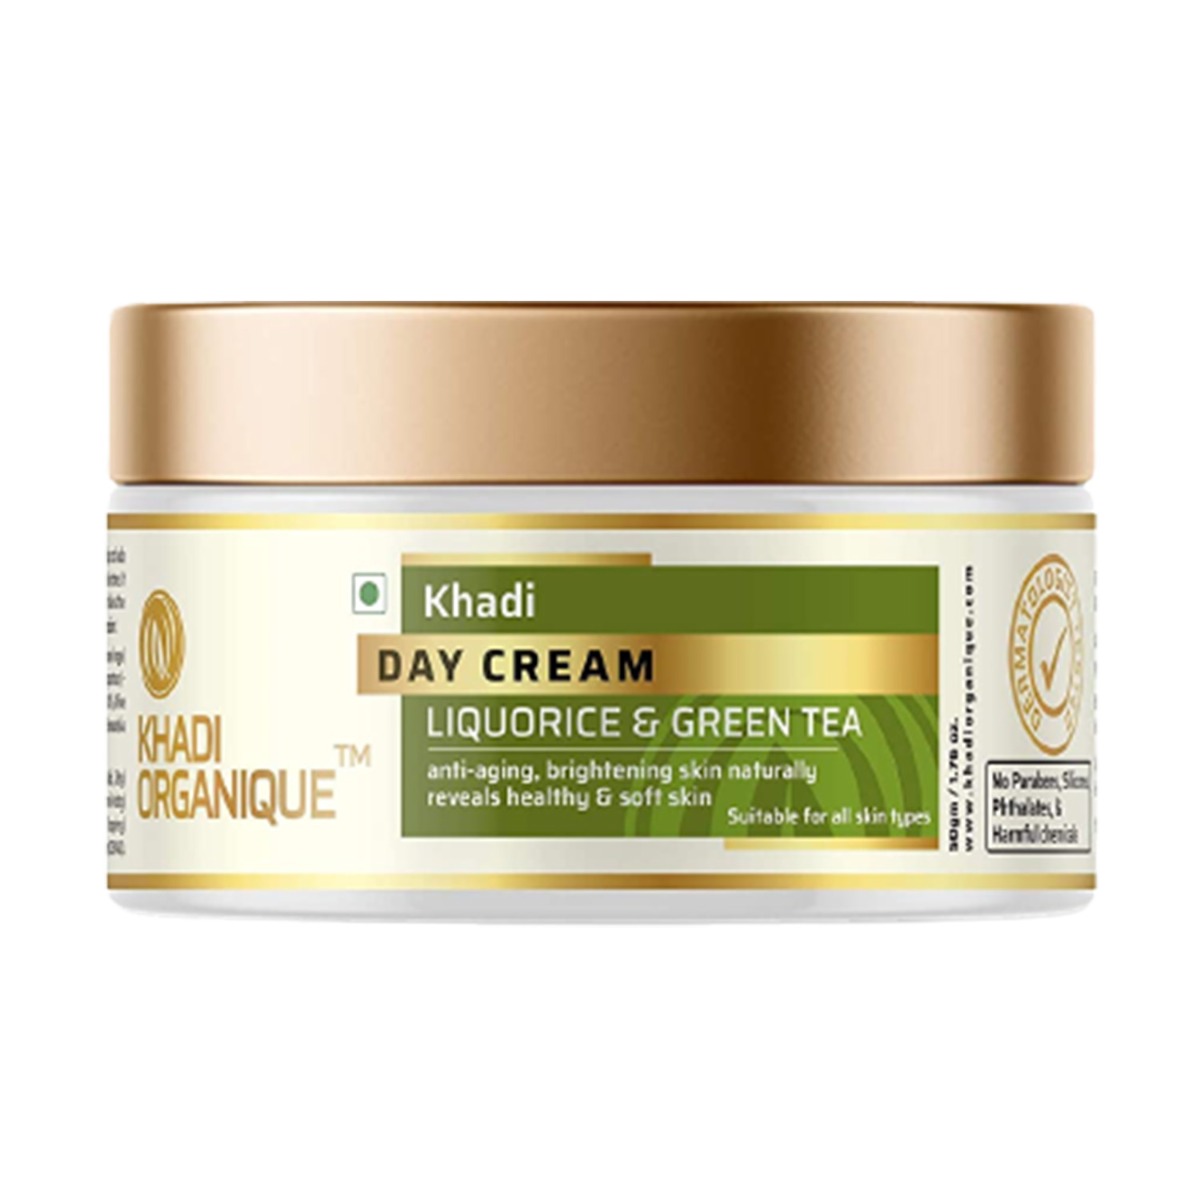 Khadi Organique Day Cream Liquorice & Green Tea, 50gm